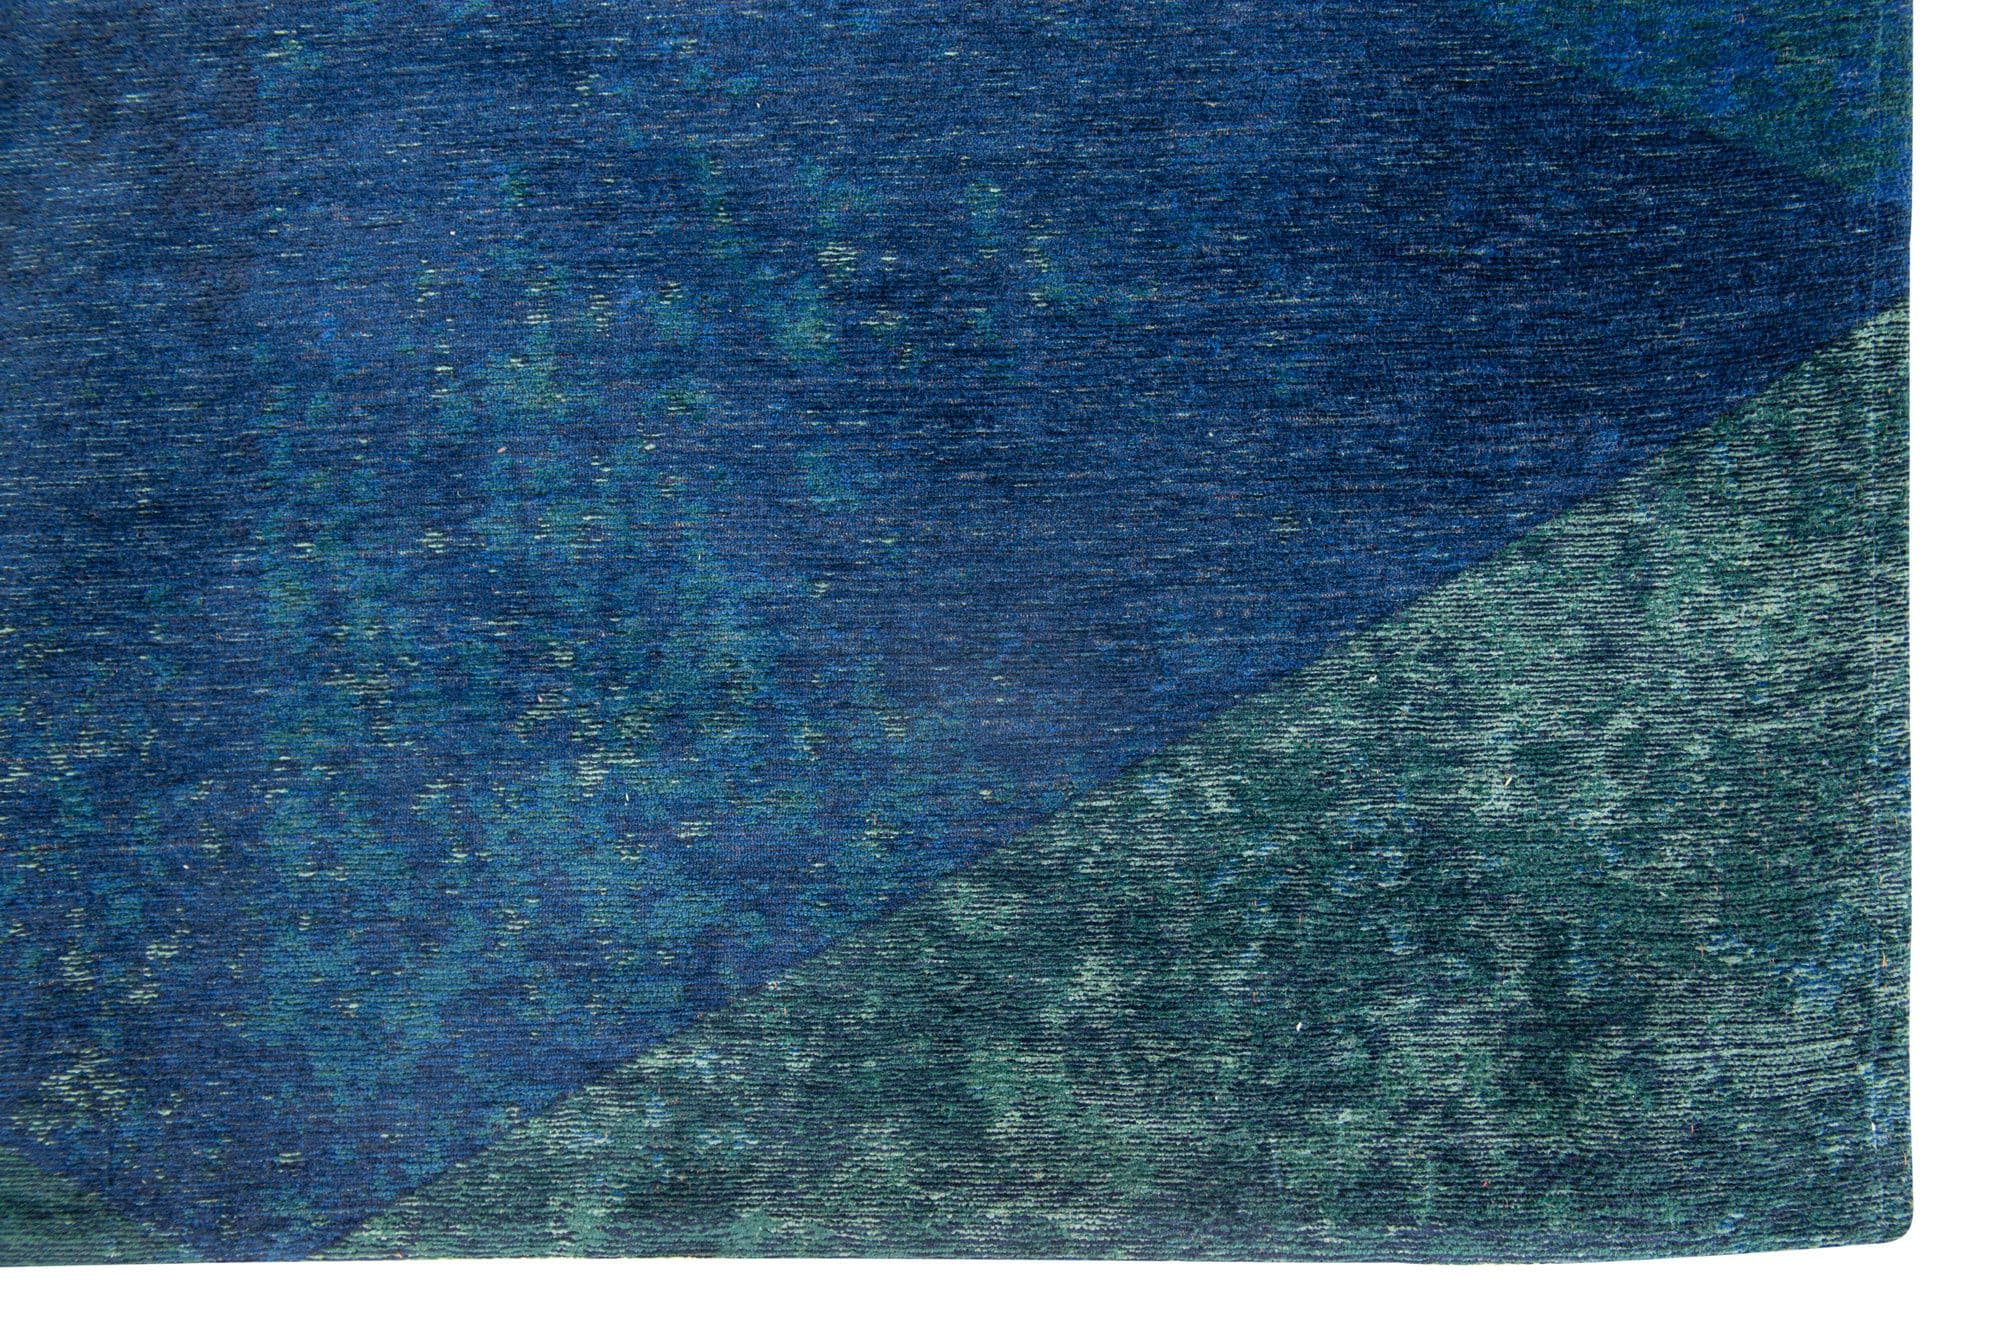 vloerkleed louis de poortere christian fischbacher lisboa saphir blue 200cm x 280cm